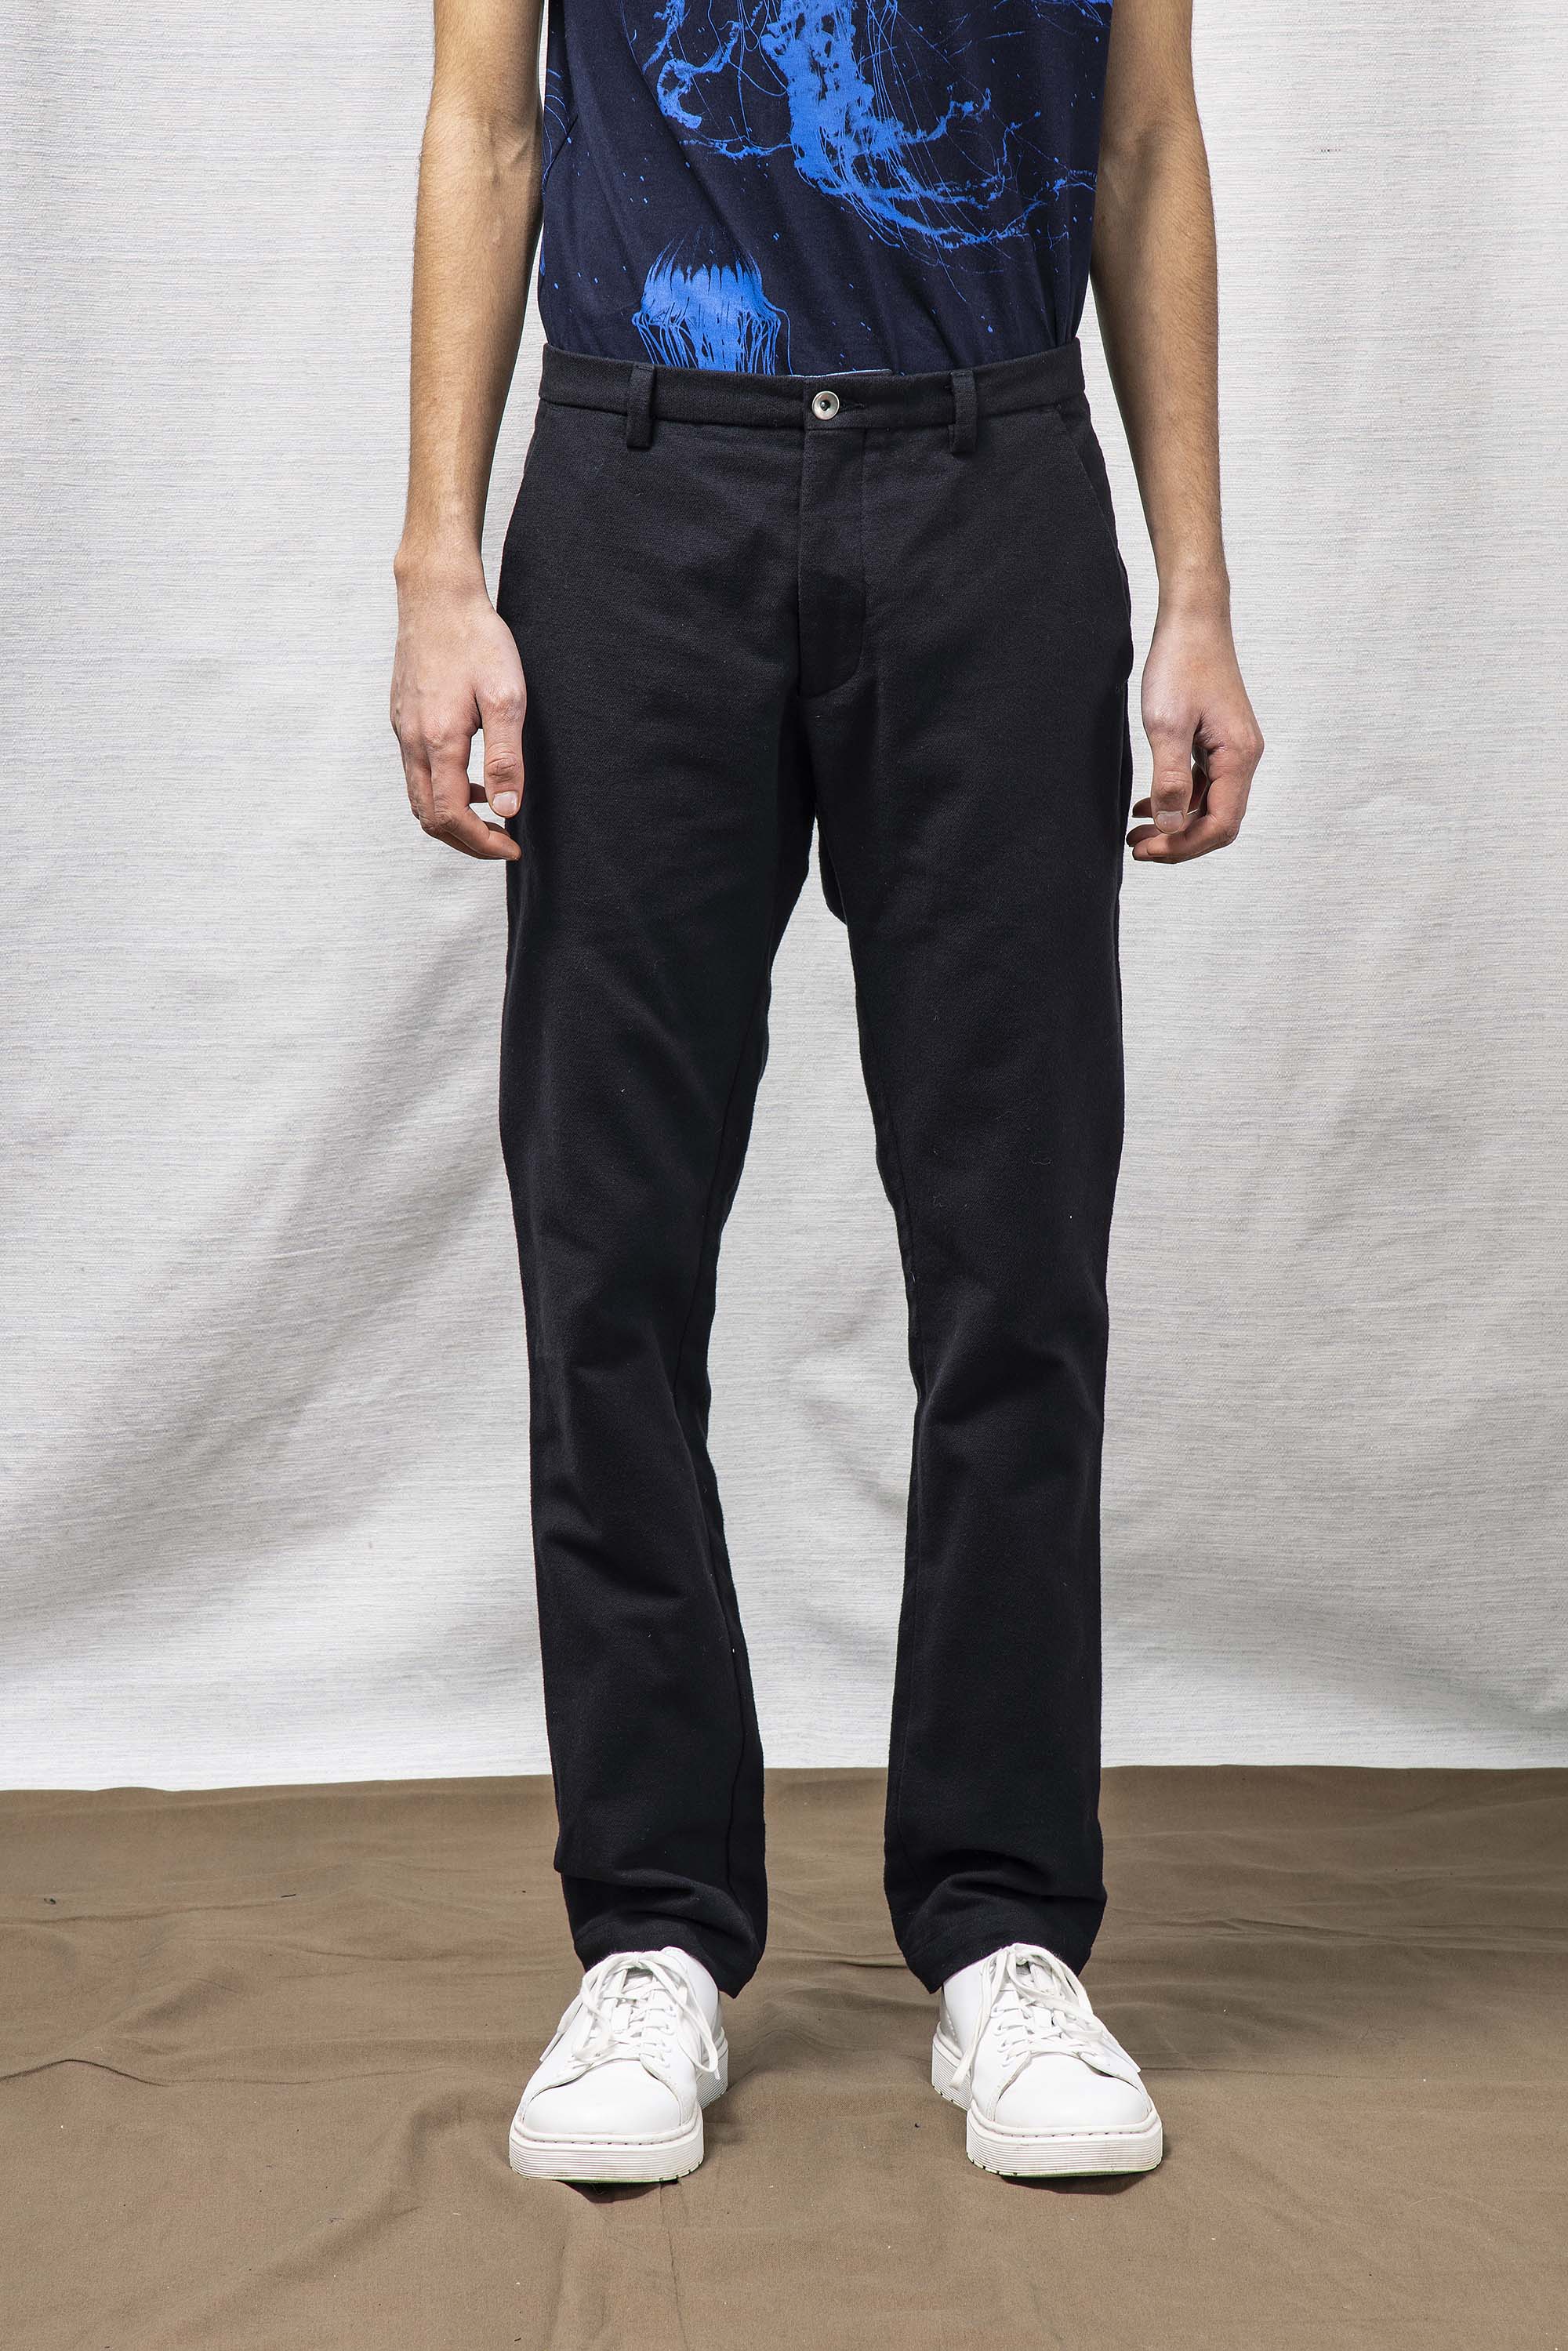 Pantalon Flanelle Reportero Noir particulièrement confortables et stylés, parfaits à porter au quotidien